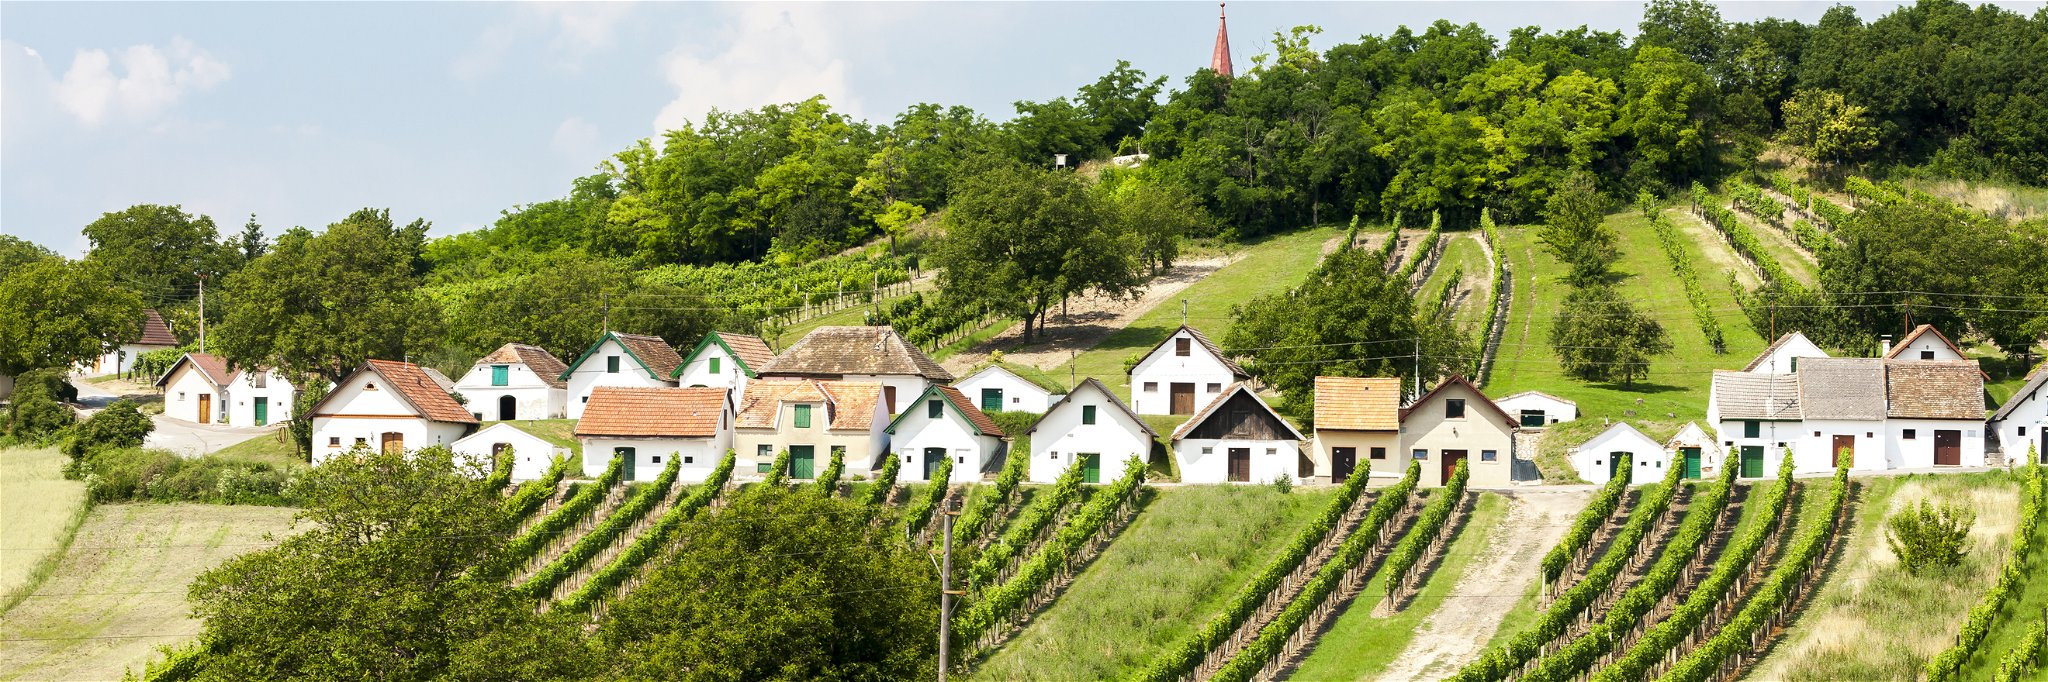 Traditional cellar buildings in Niederösterreich,&nbsp;Austria.